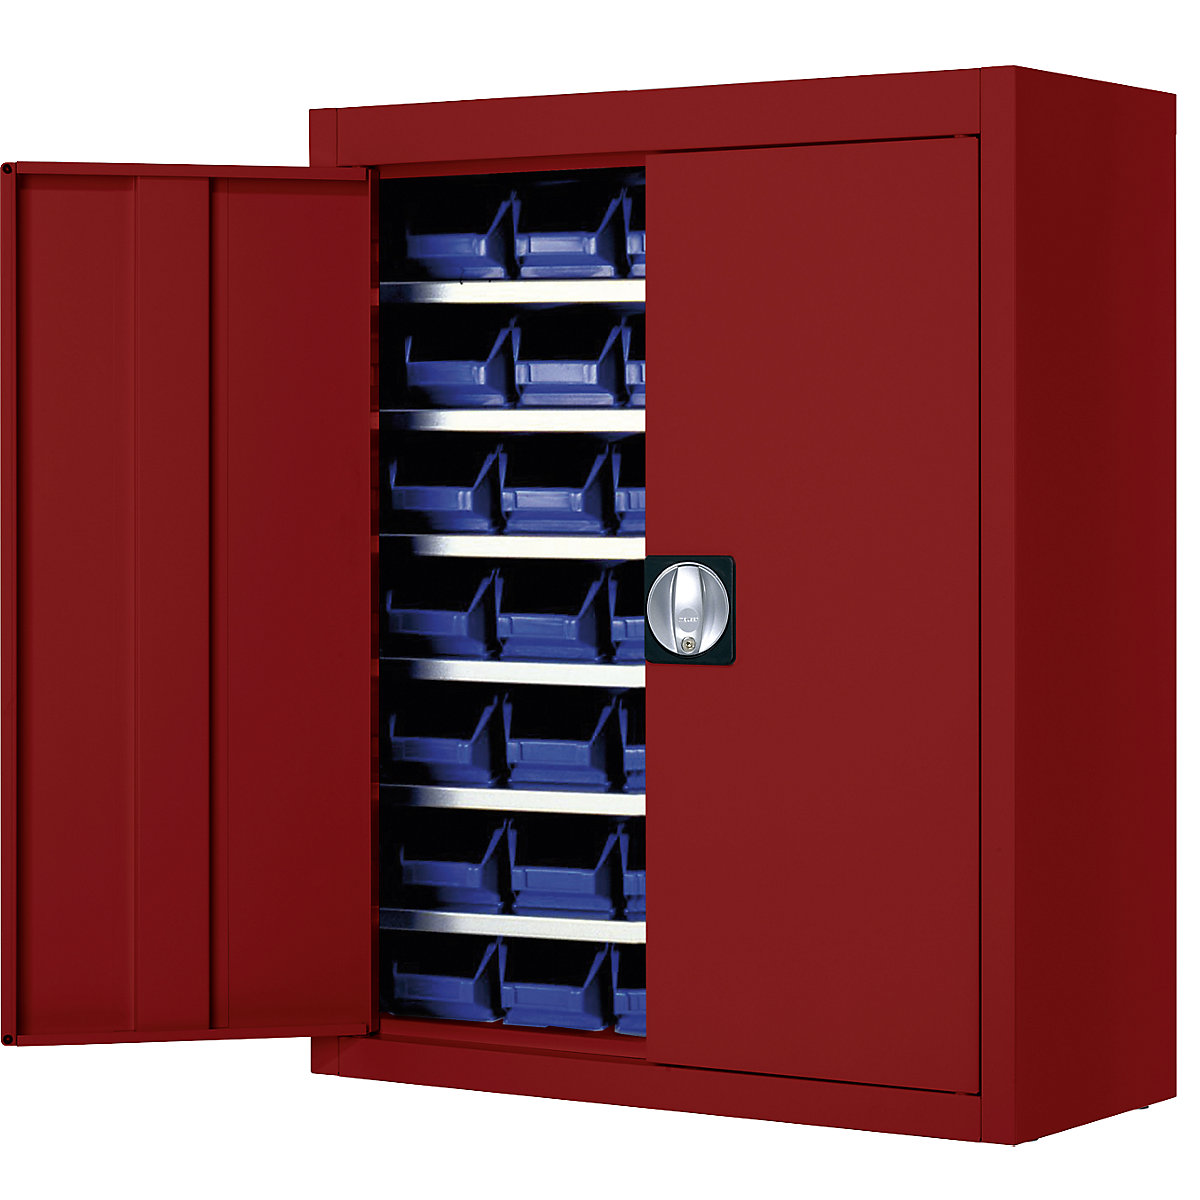 Magazijnkast met magazijnbakken – mauser, h x b x d = 820 x 680 x 280 mm, eenkleurig, rood, 42 bakken-6